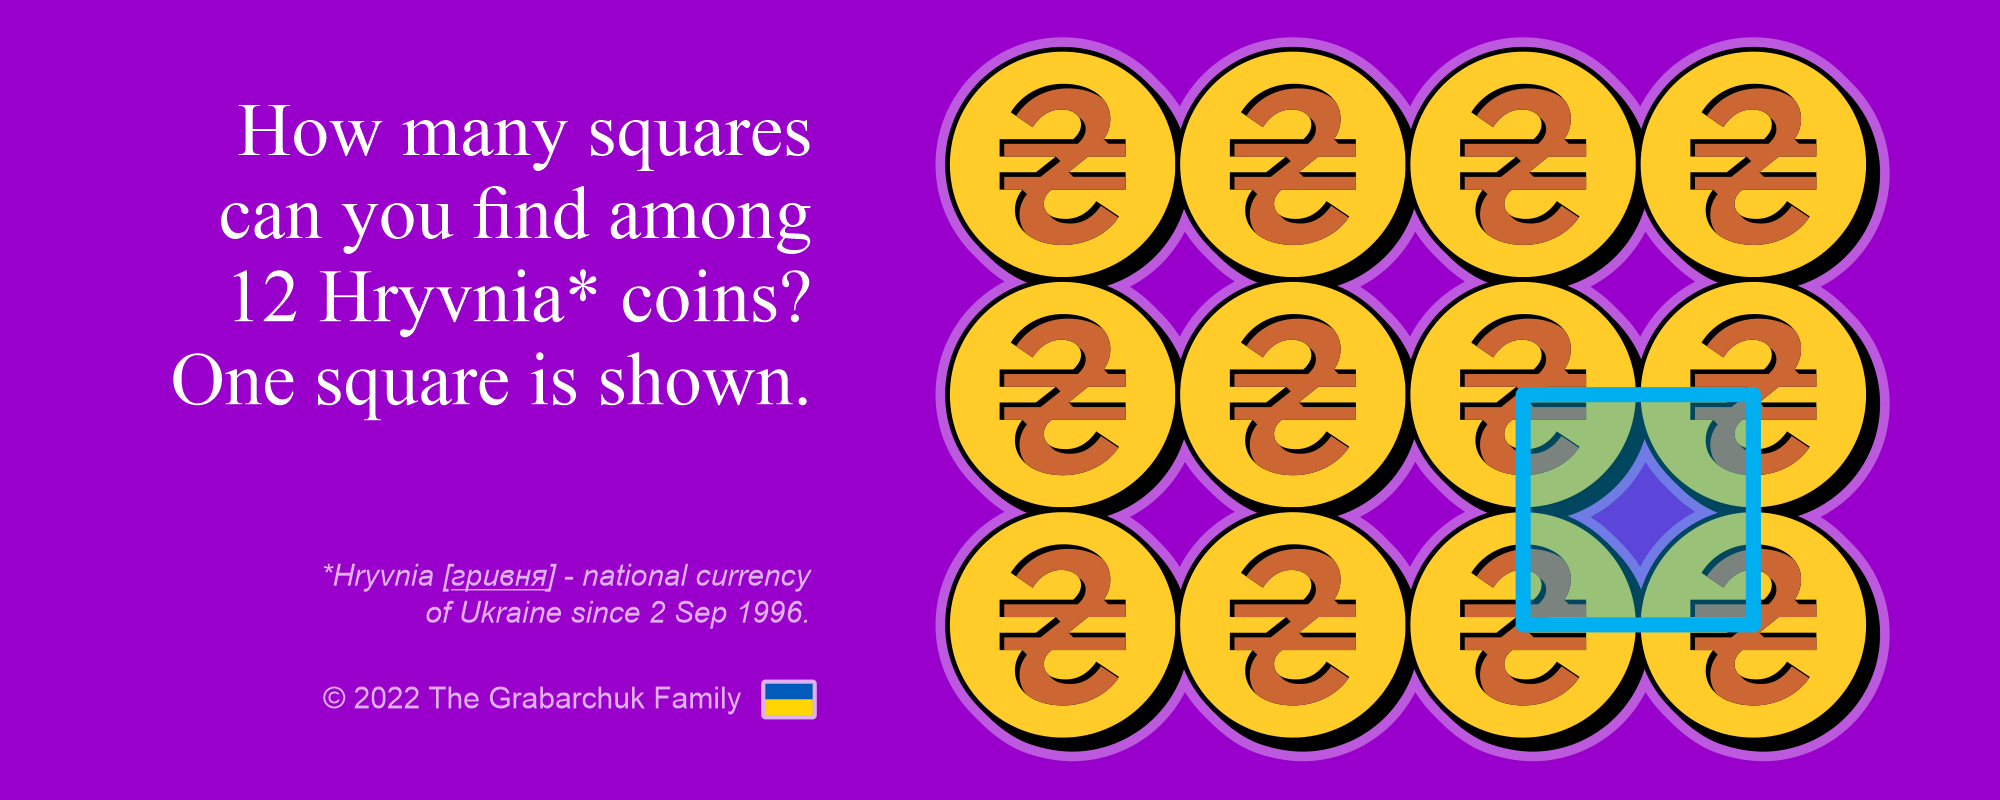 Hryvnia Coins